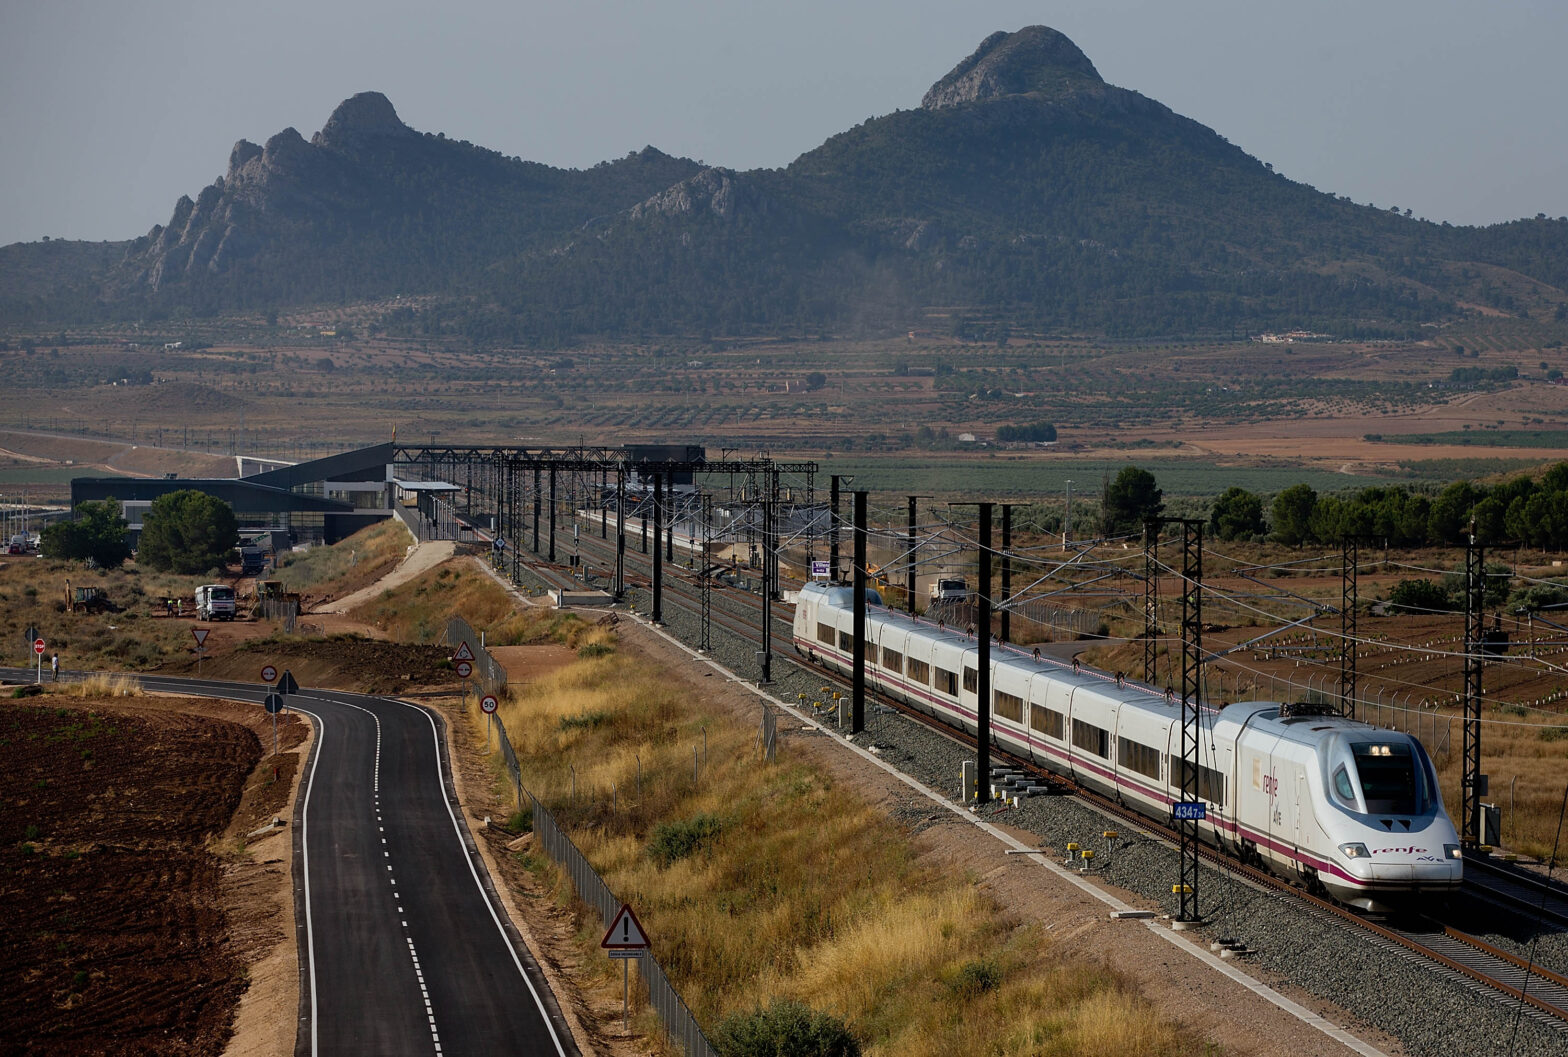 Una nueva línea ferroviaria conectará próximamente las localidades costeras más visitadas de España